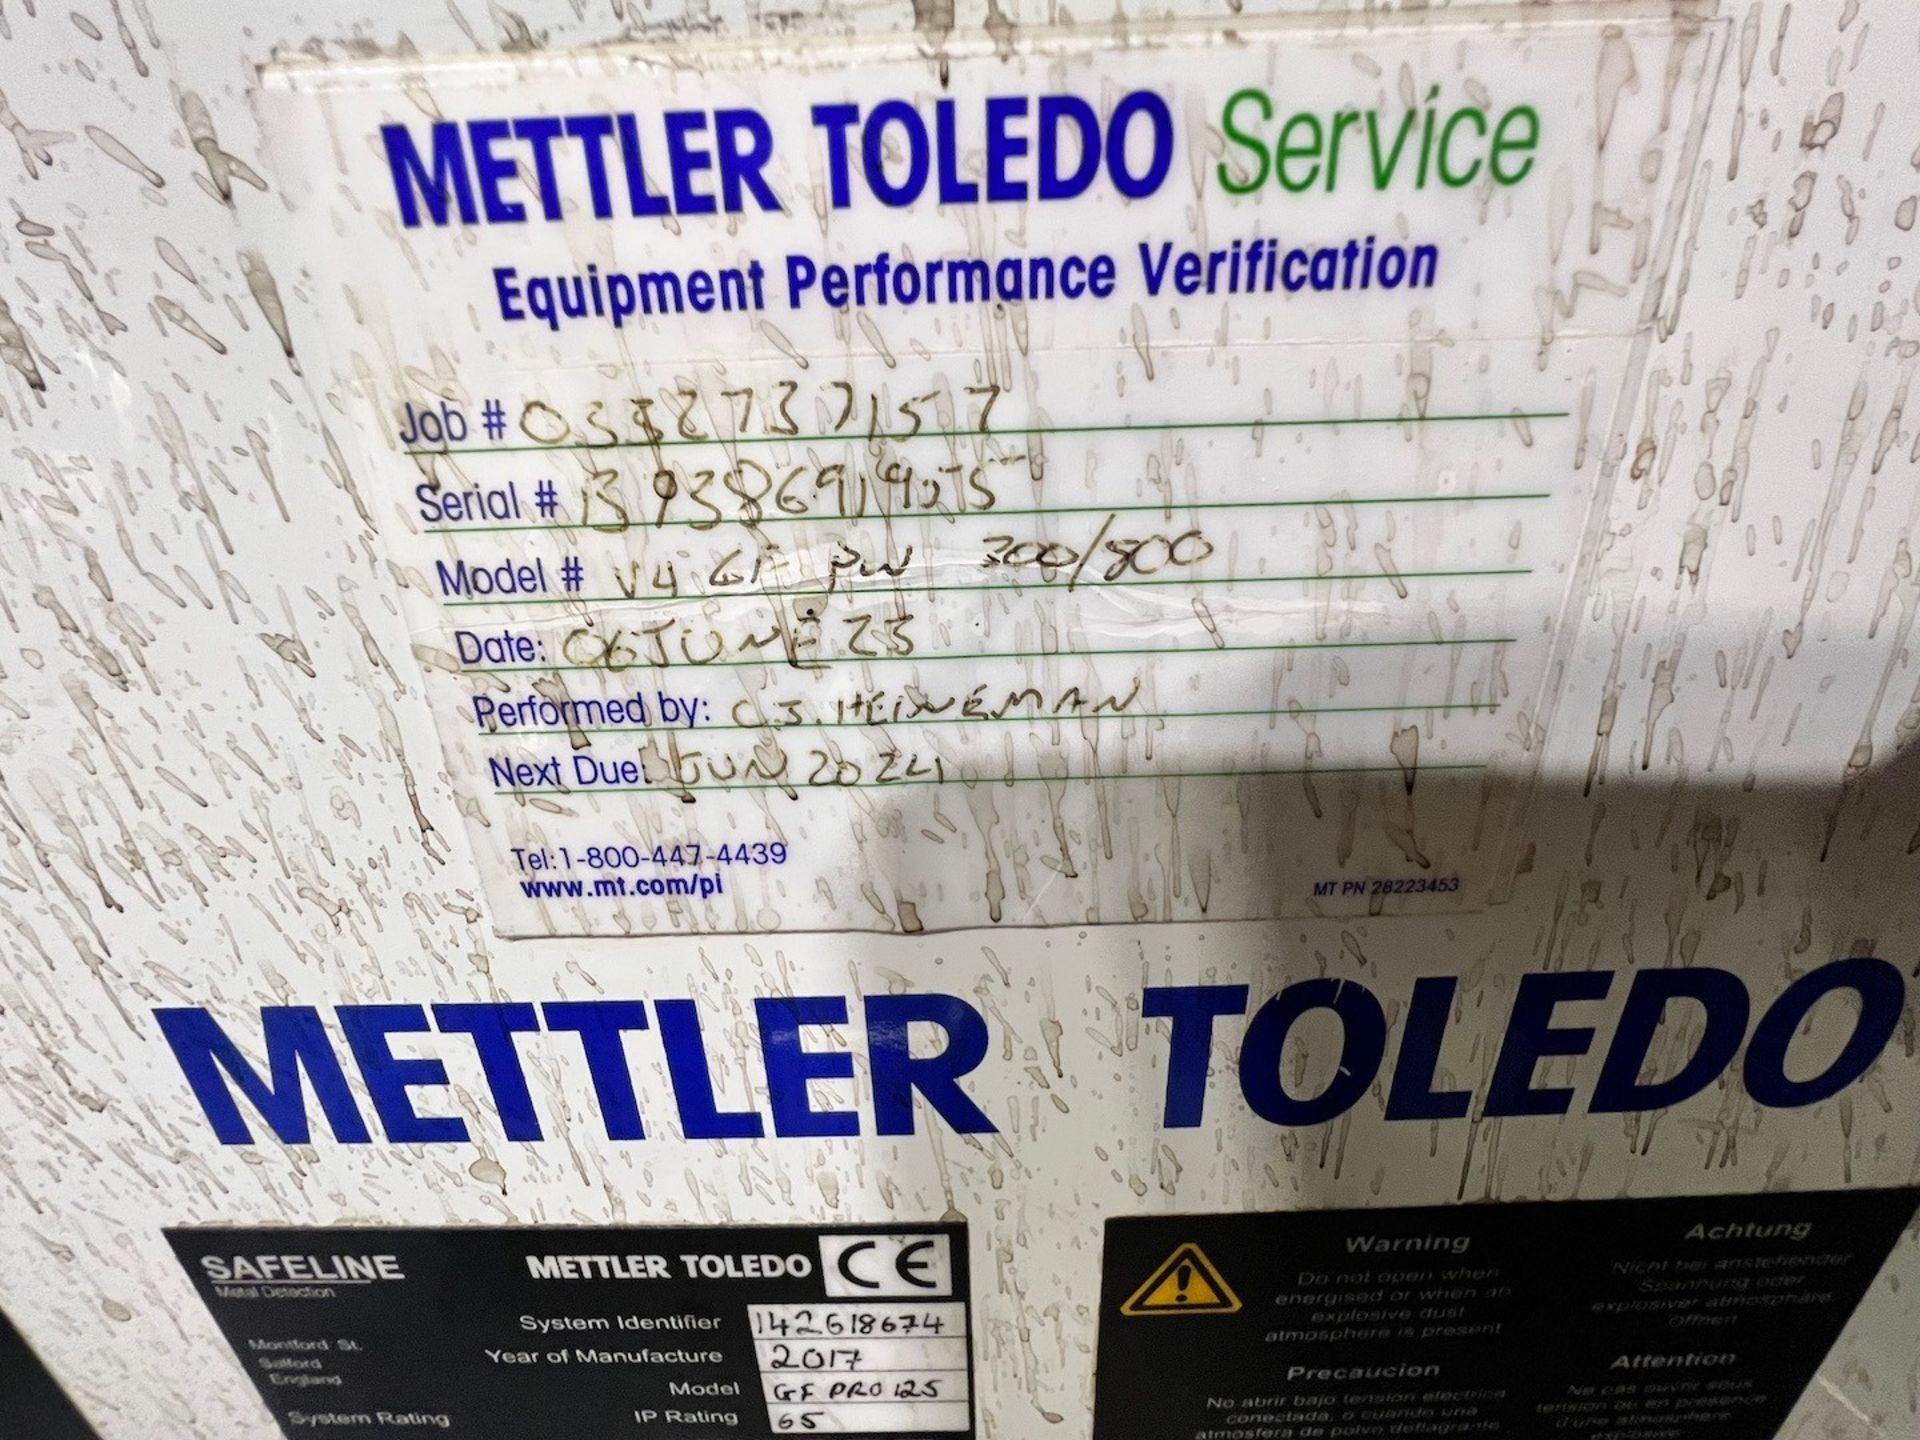 METTLER TOLEDO SAFELINE FLOW THROUGH / DROP THROUGH METAL DETECTOR, MODEL GFPRO125, S/N 14261874, - Image 5 of 5